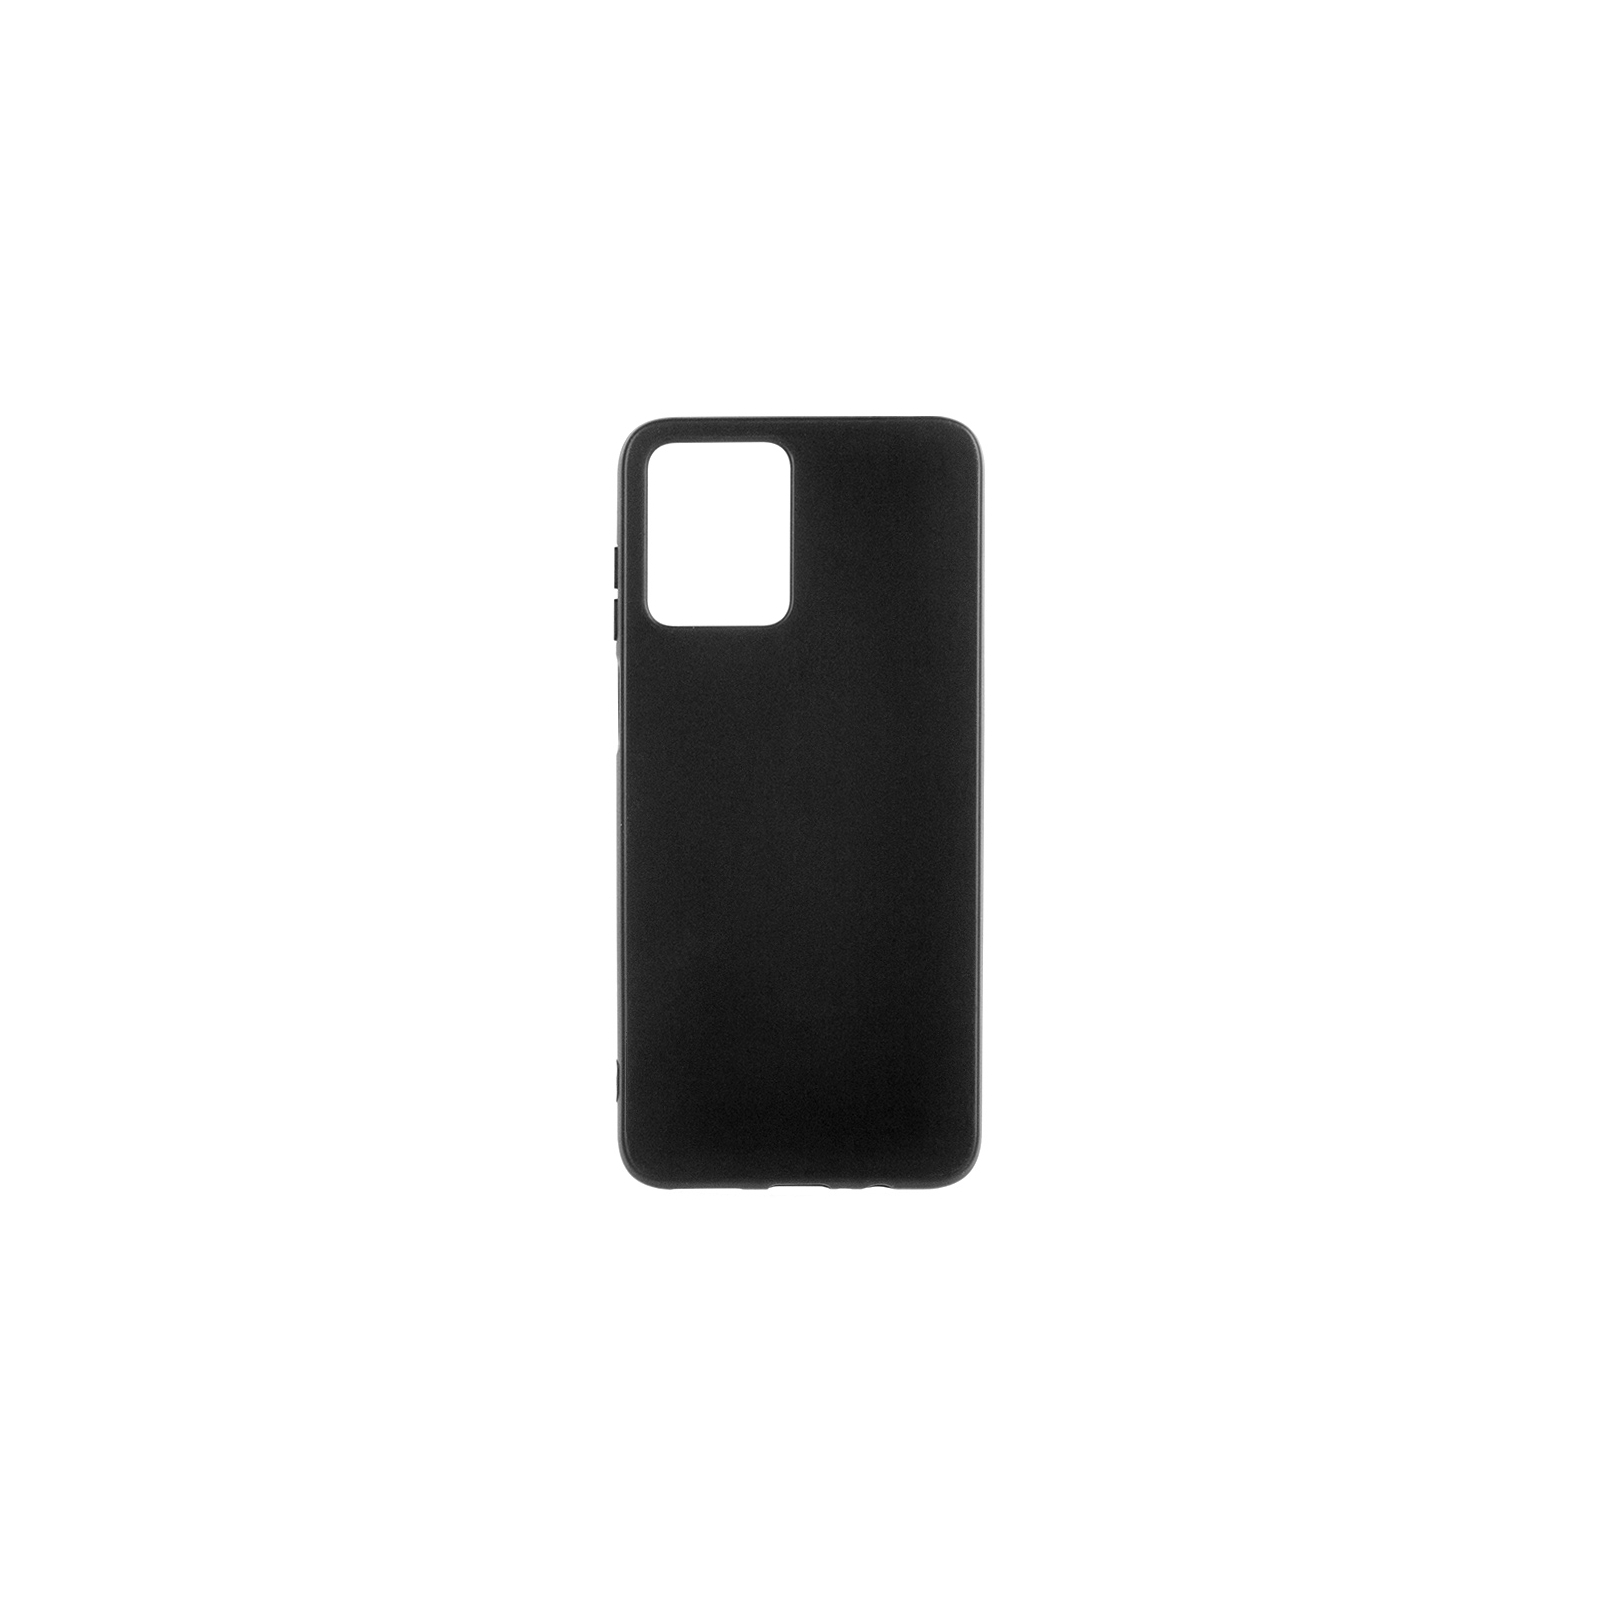 Чехол для мобильного телефона ColorWay TPU matt Motorola G13 black (CW-CTMMG13-BK)